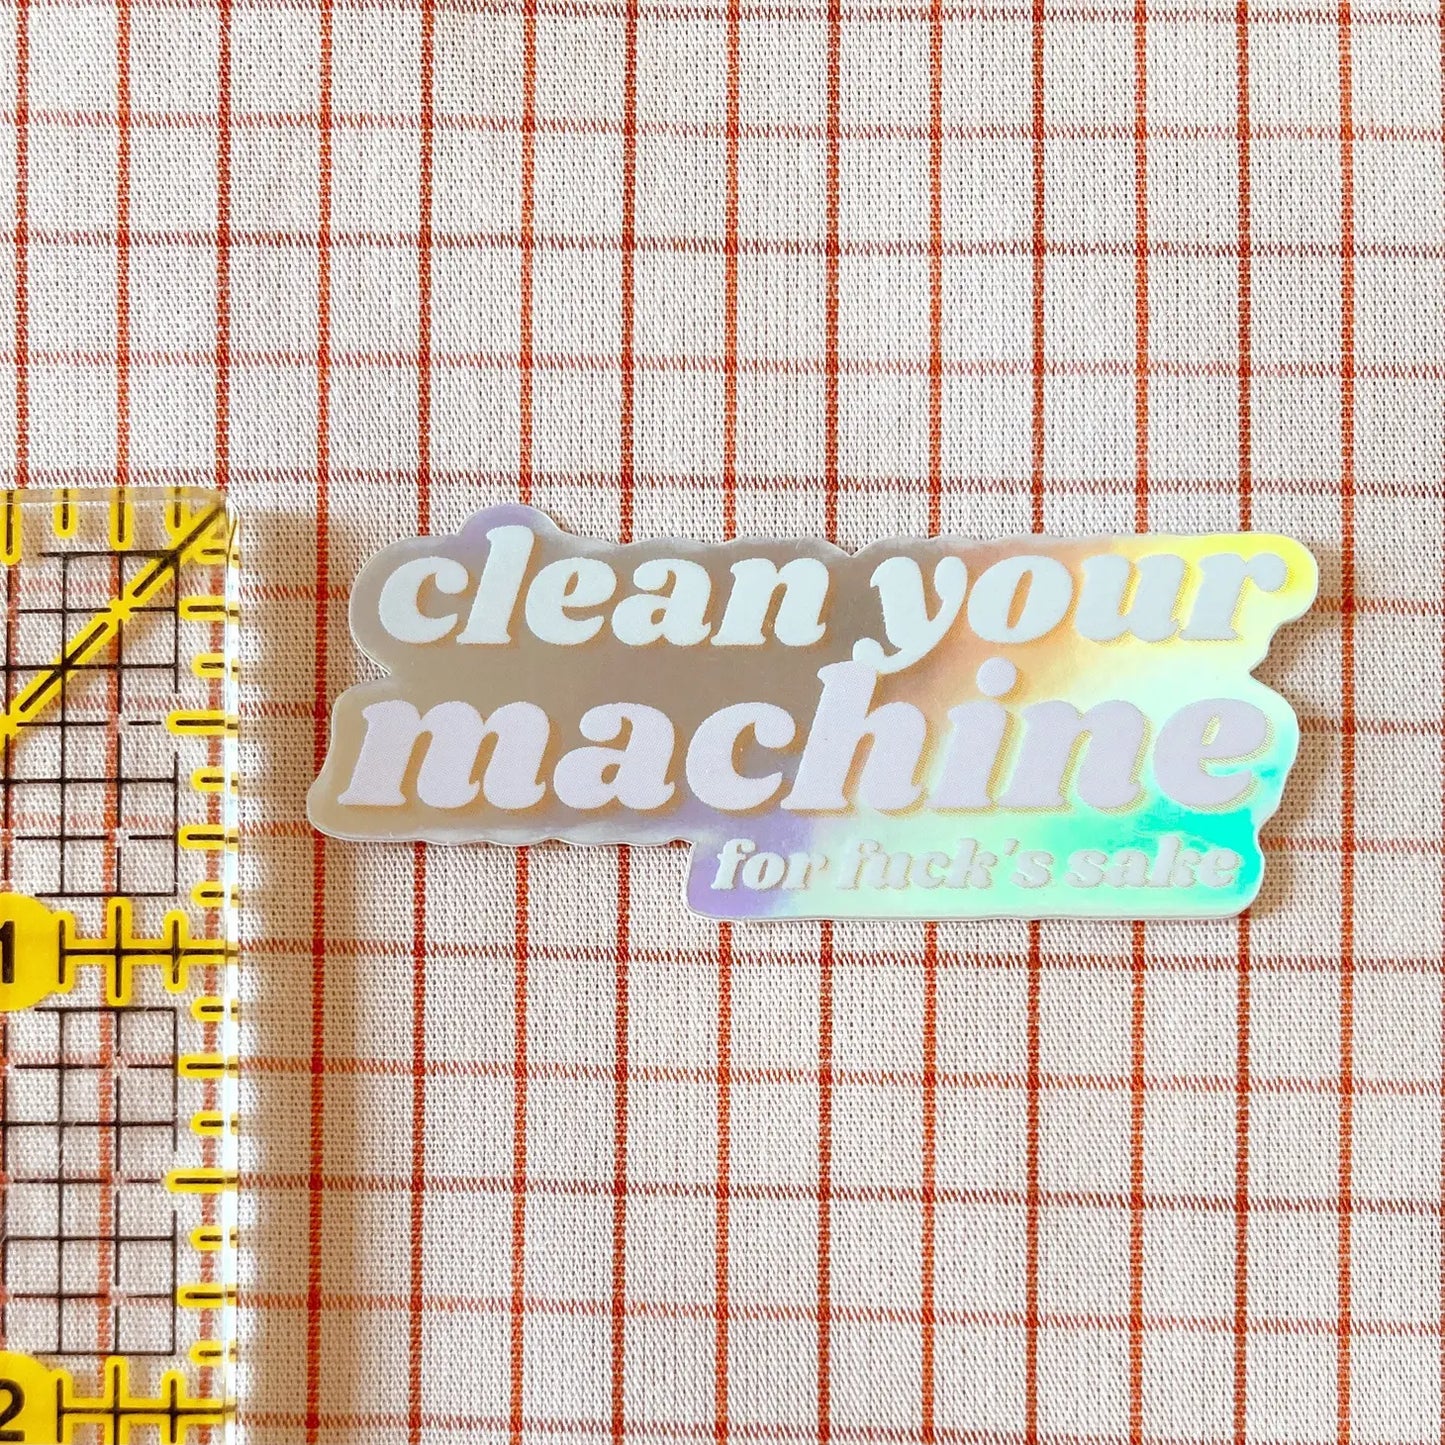 Clean Your Machine | Holographic Vinyl Sticker